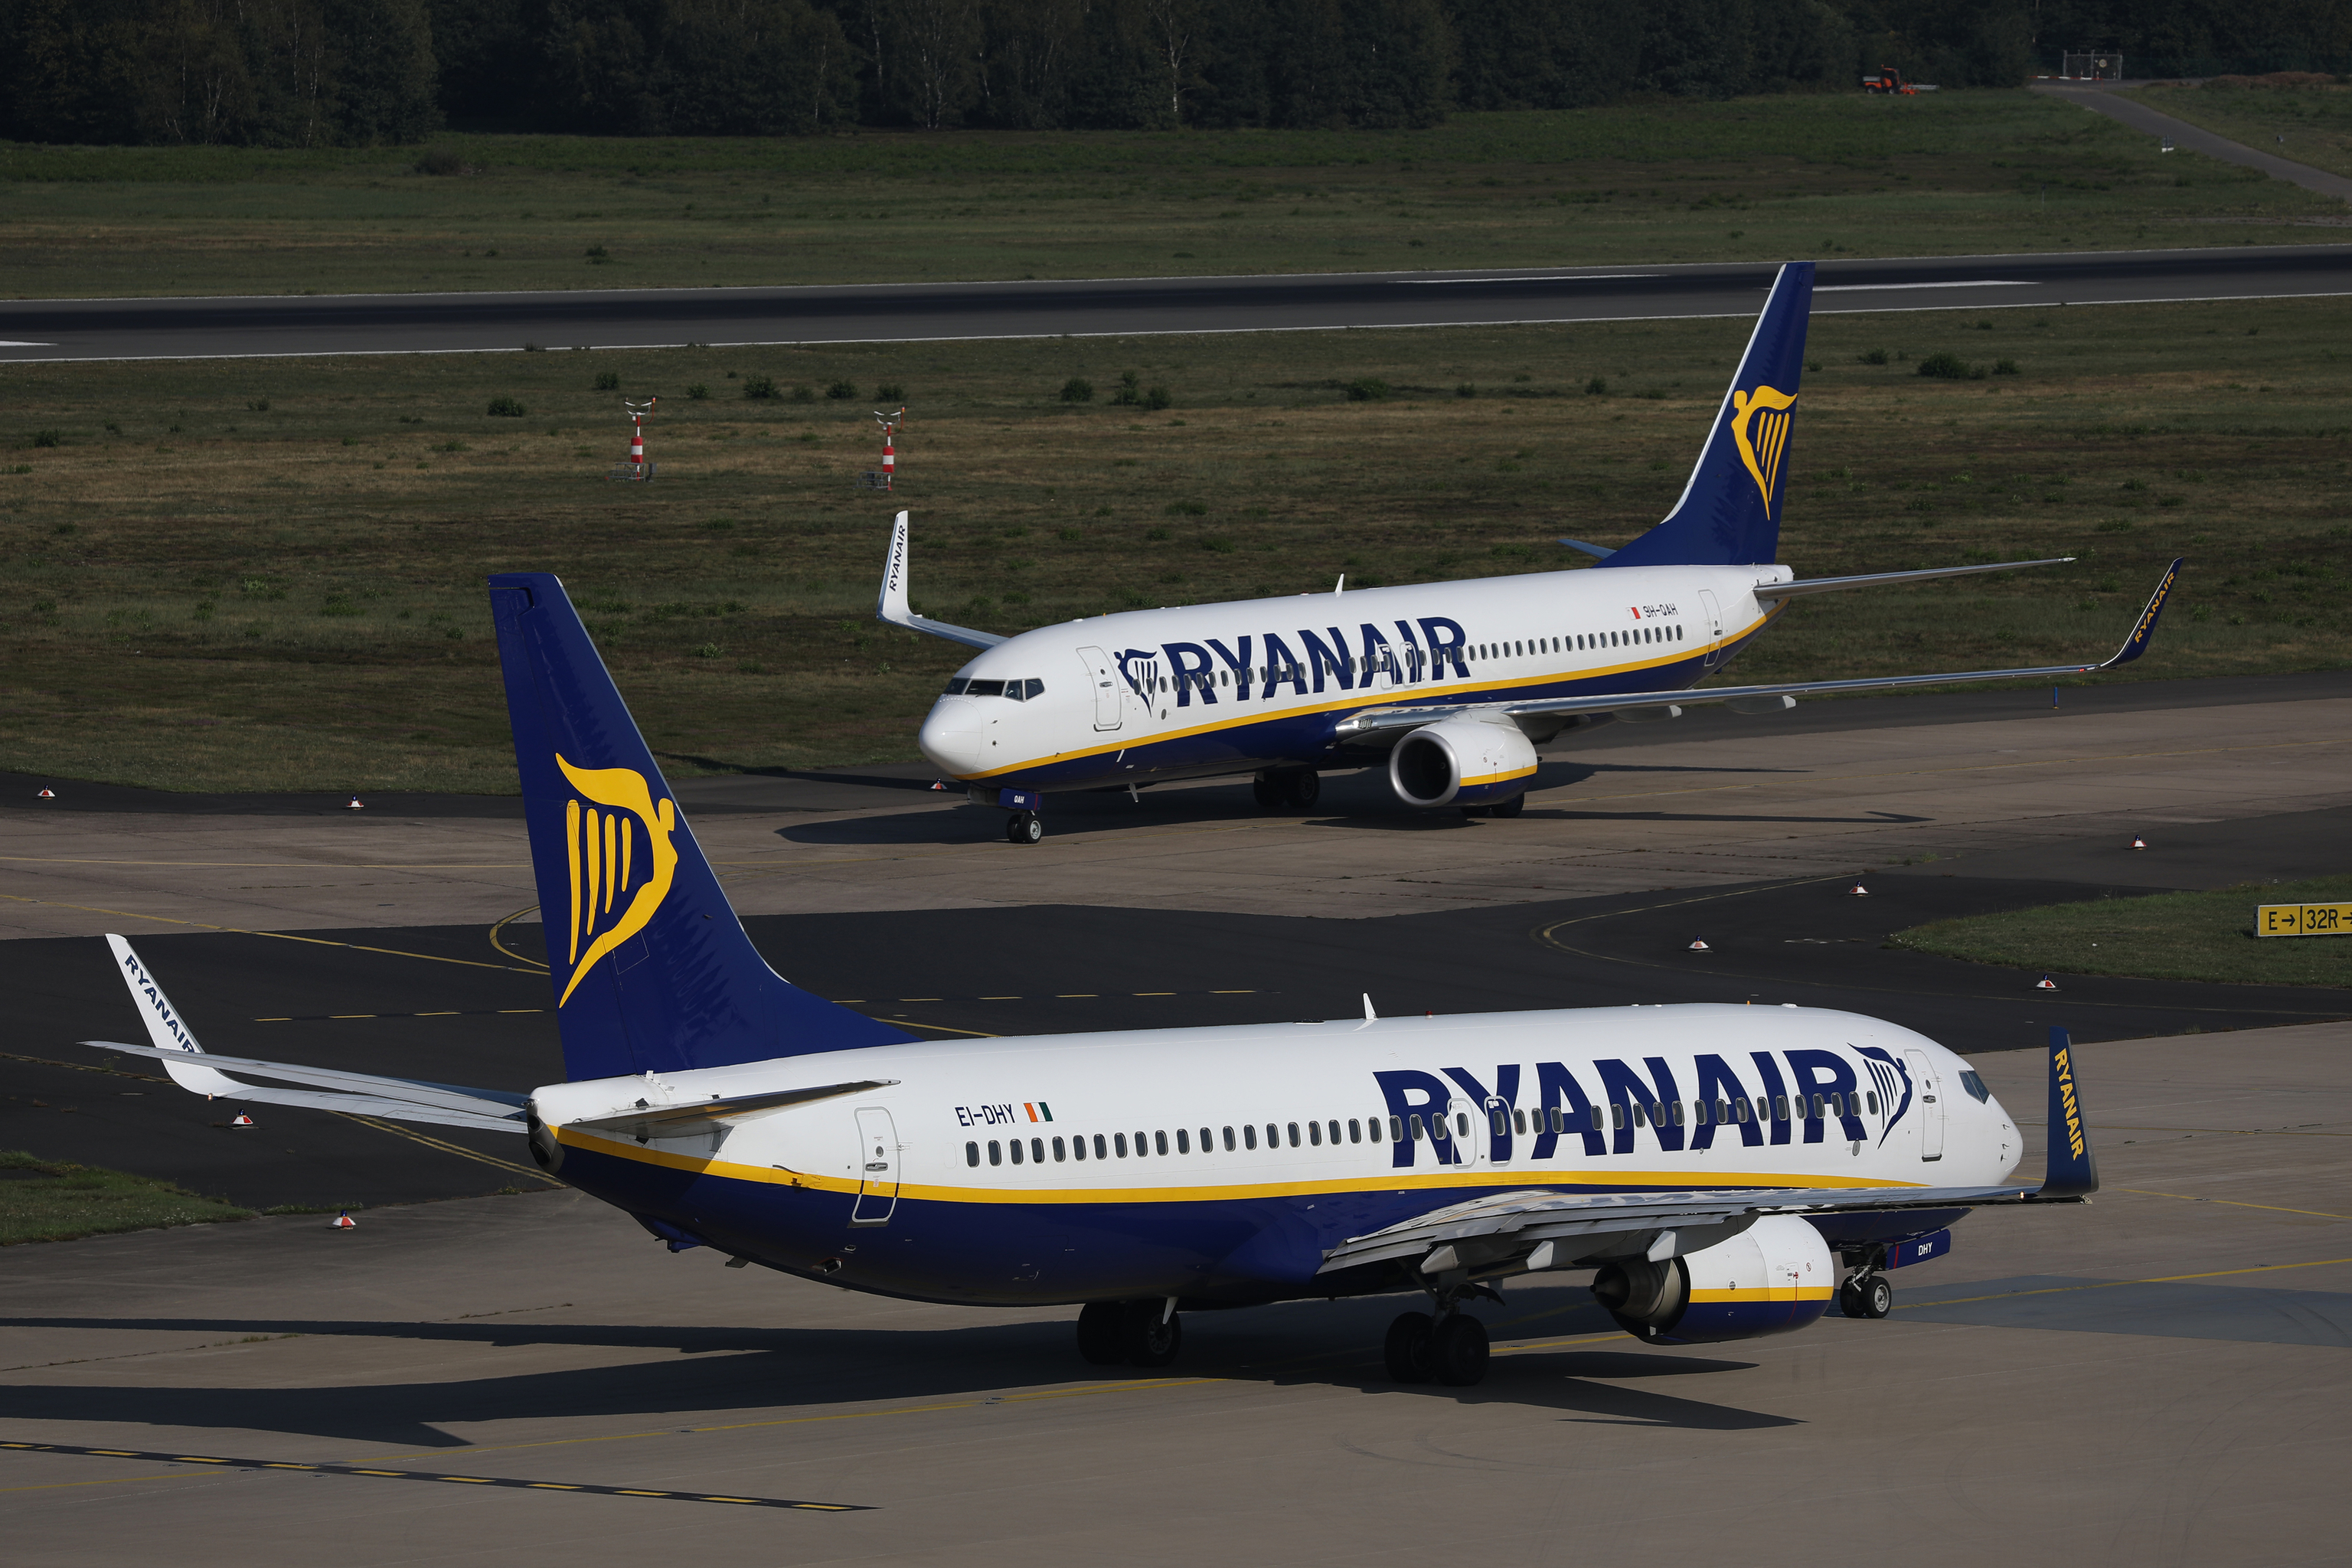 Huelga Ryanair septiembre: vuelos afectados, retrasos, cancelaciones y cómo | Cómo